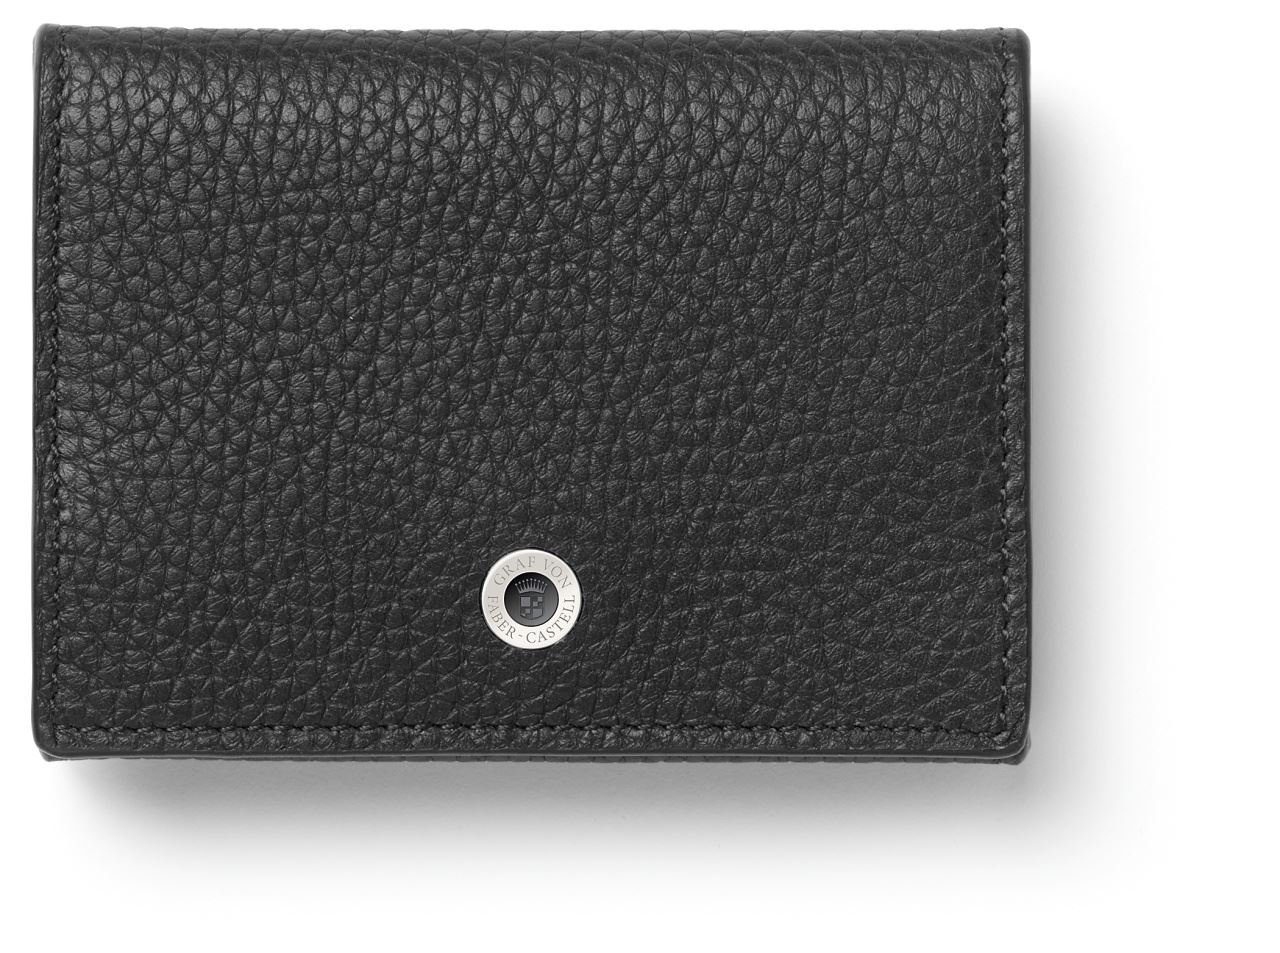 Graf-von-Faber-Castell - Coin purse Cashmere, black